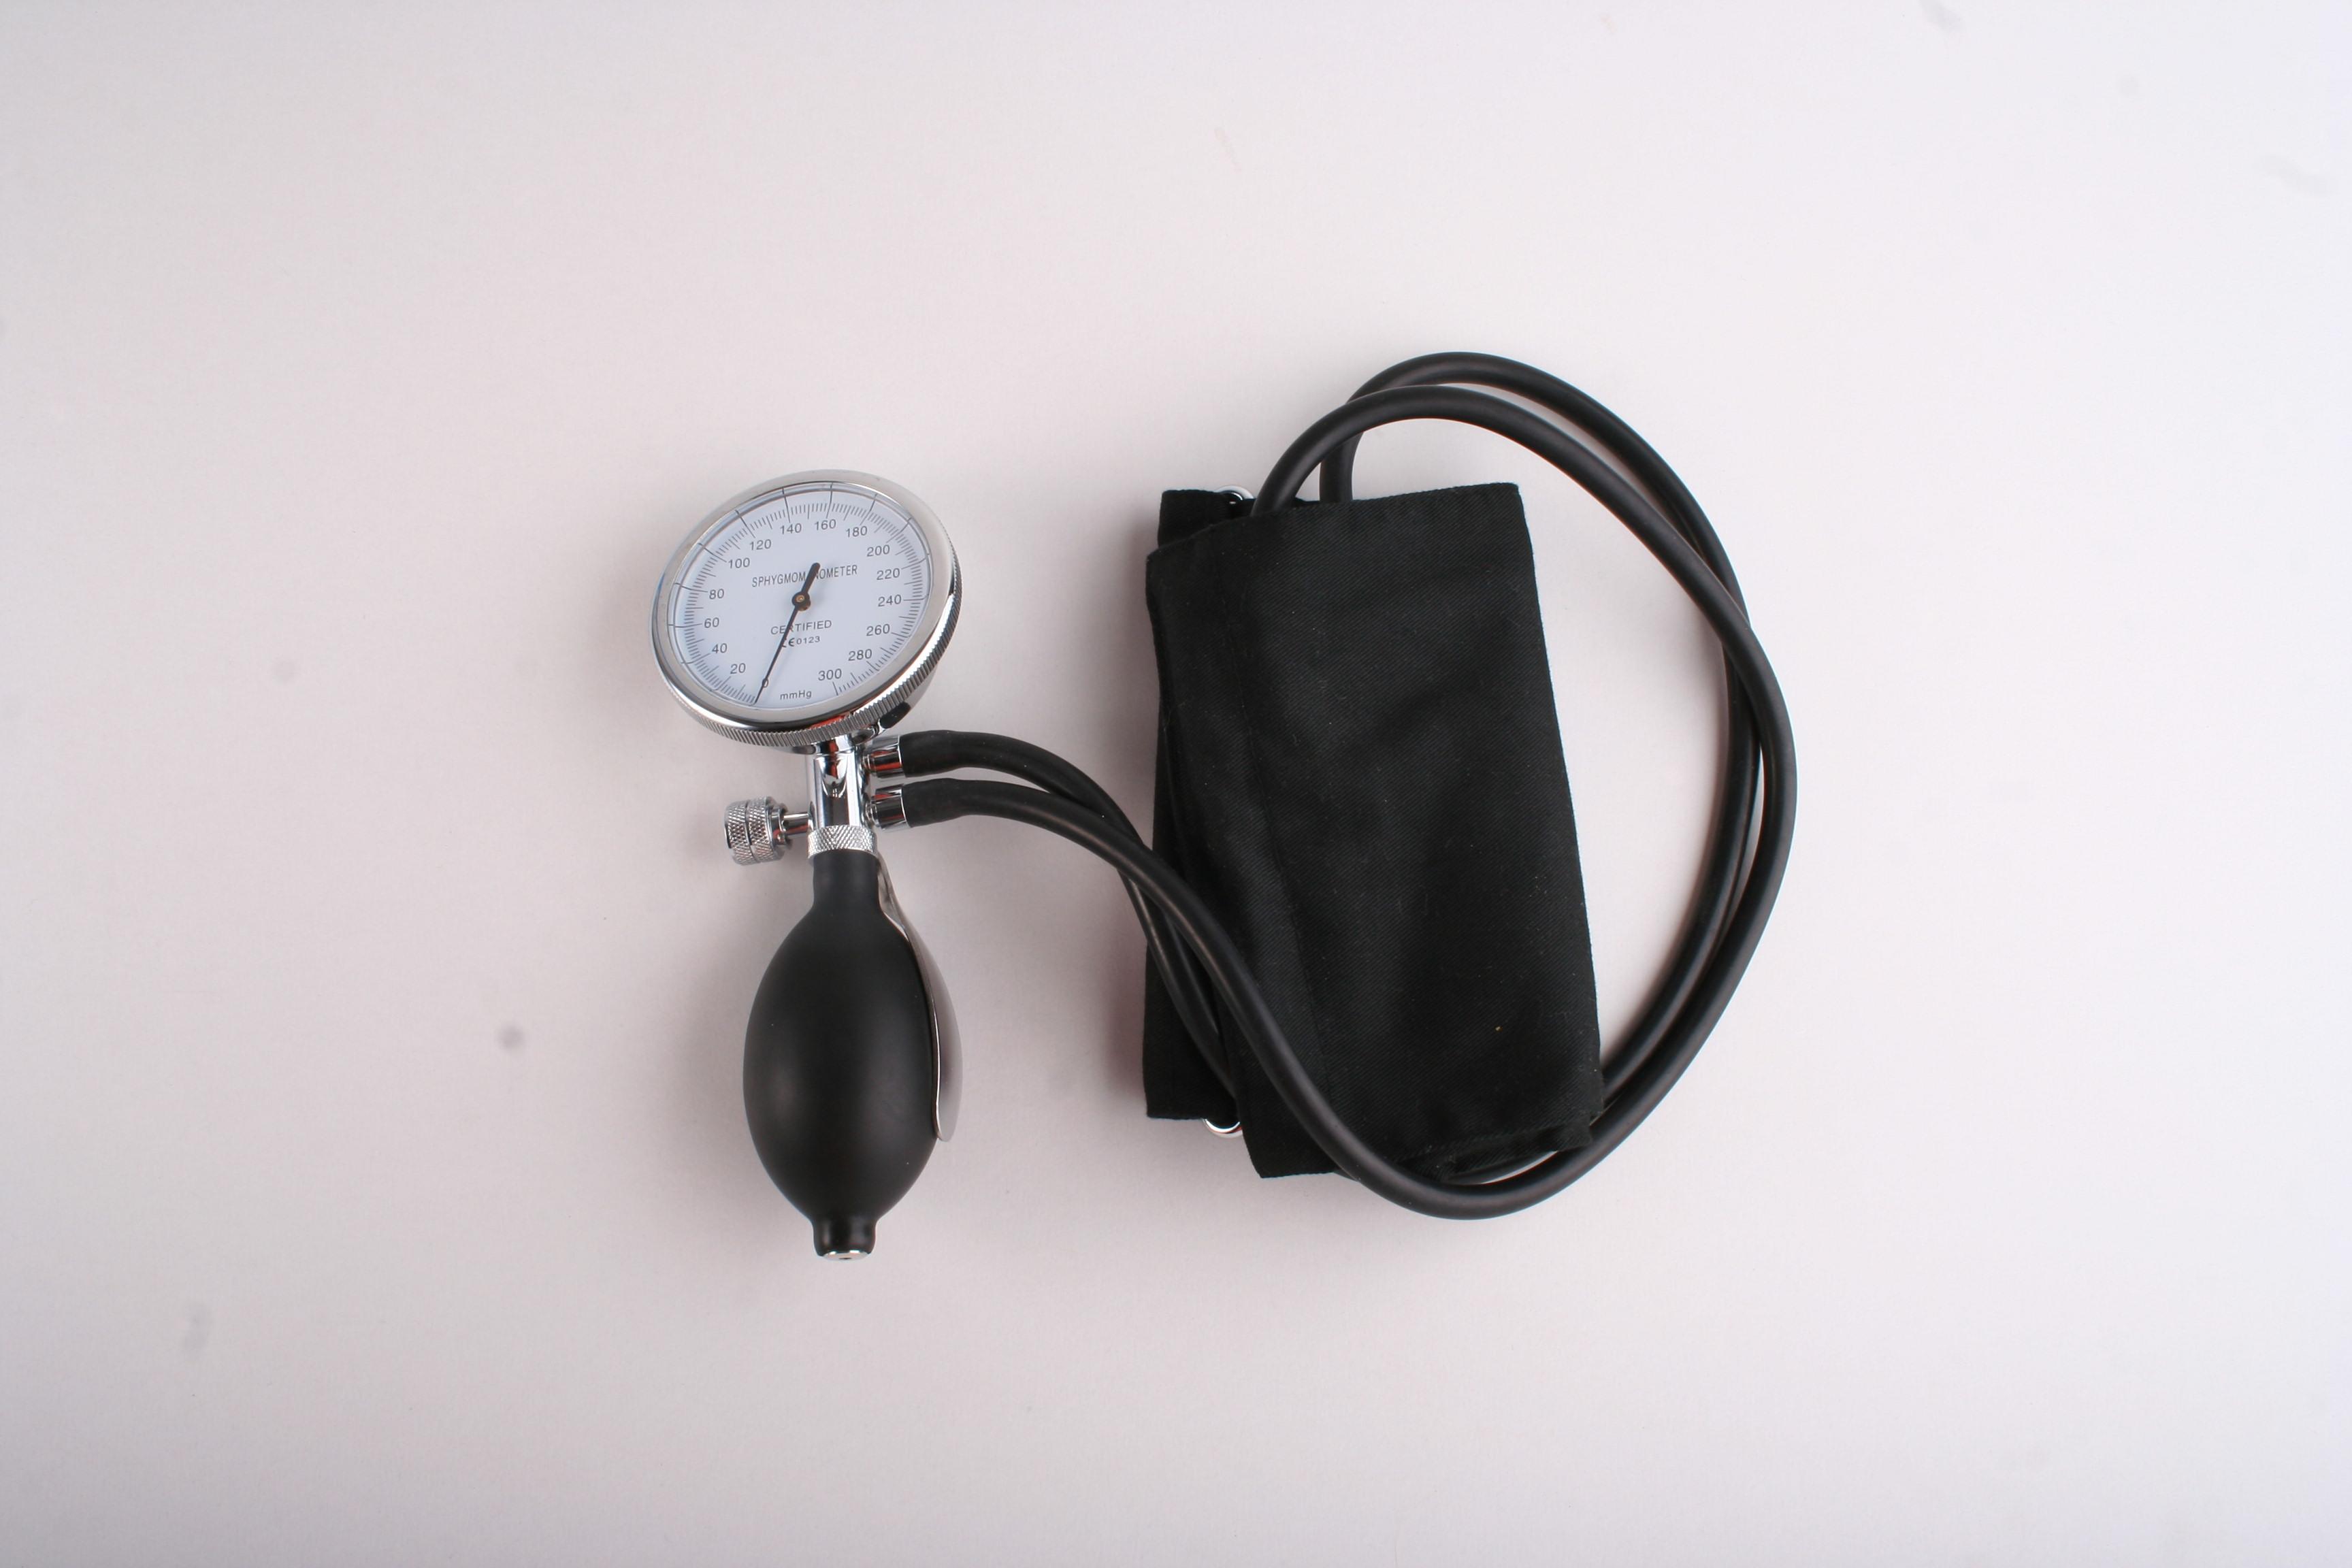 K-201C29 fonendoskopy, měřiče krevního tlaku: Hodinkový měřič TK, 2 had.0-300mm Hg,s kalibrací